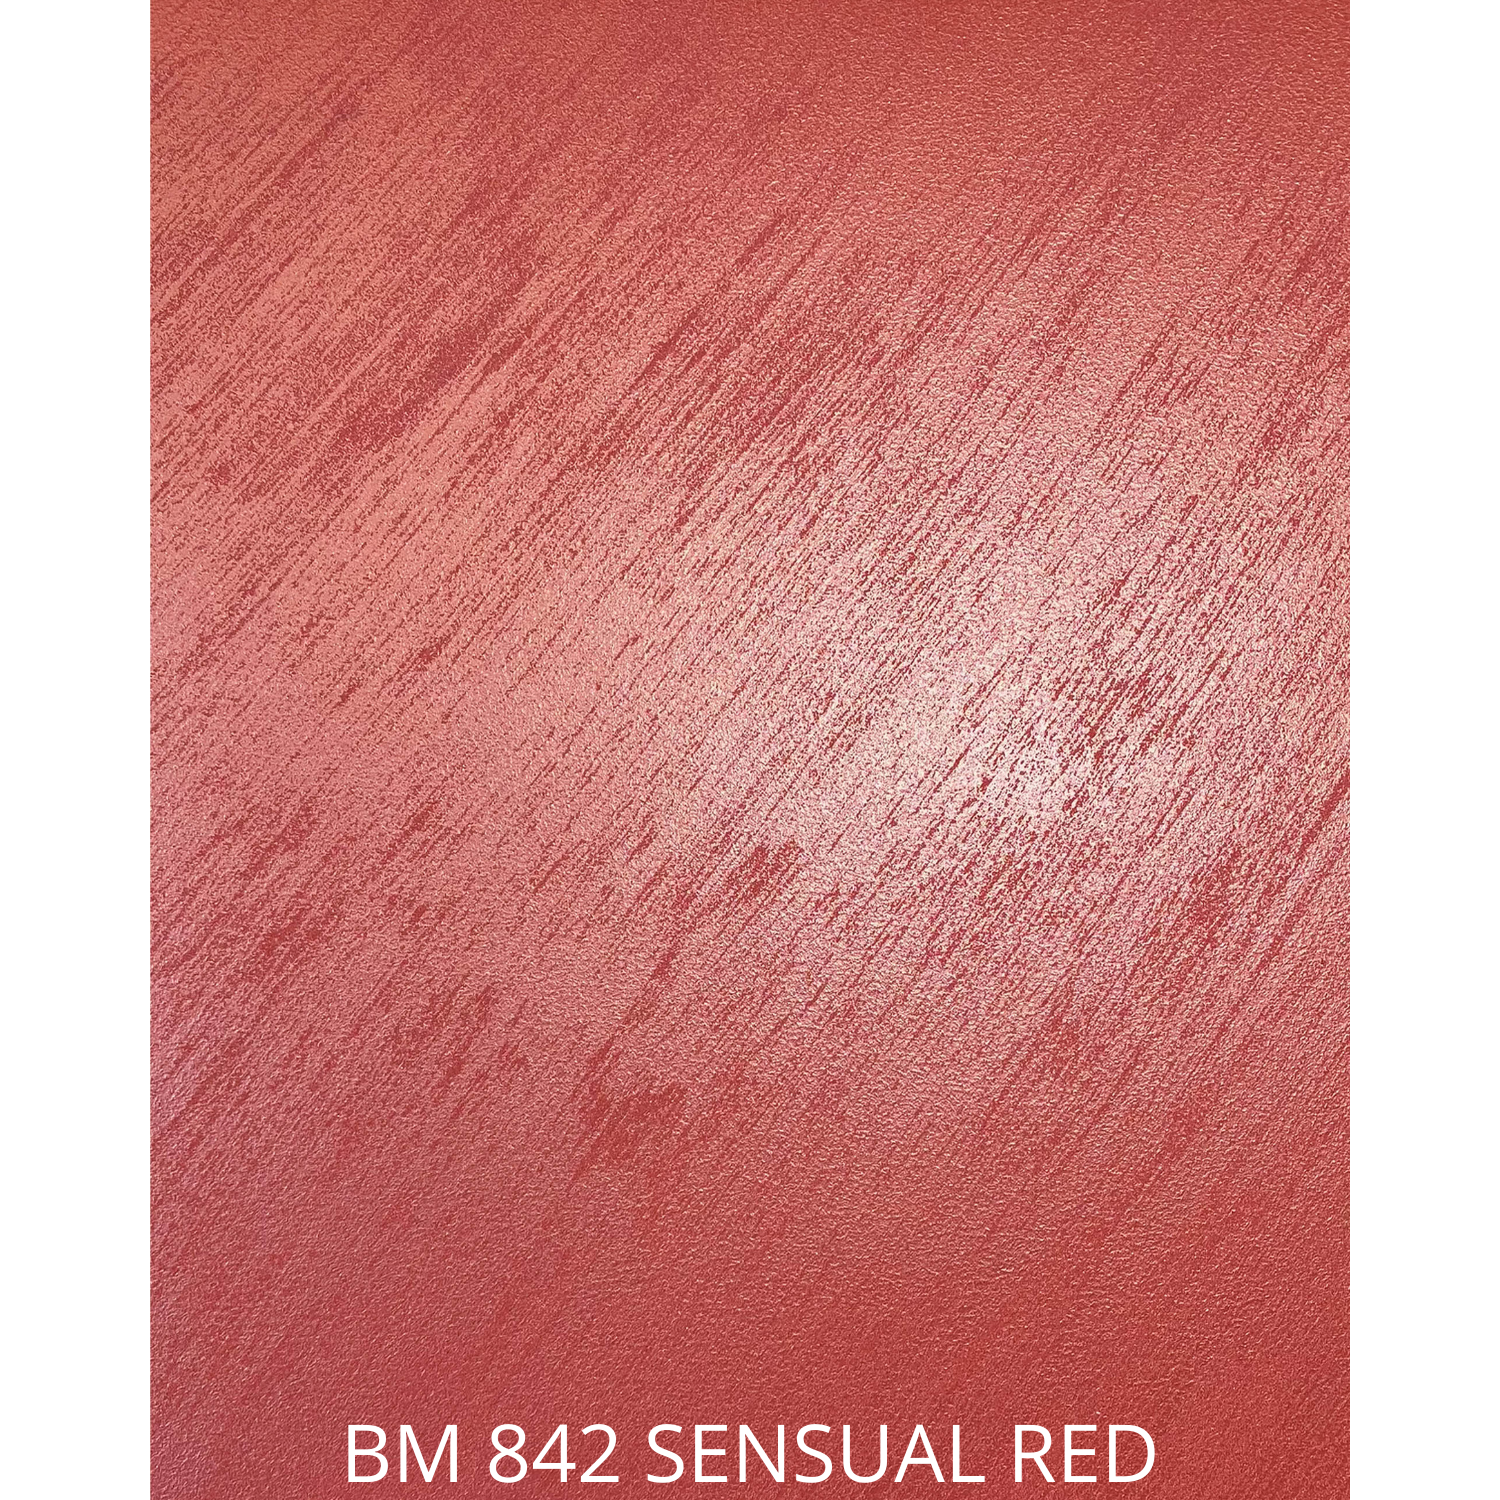 BM 842 SENSUAL RED